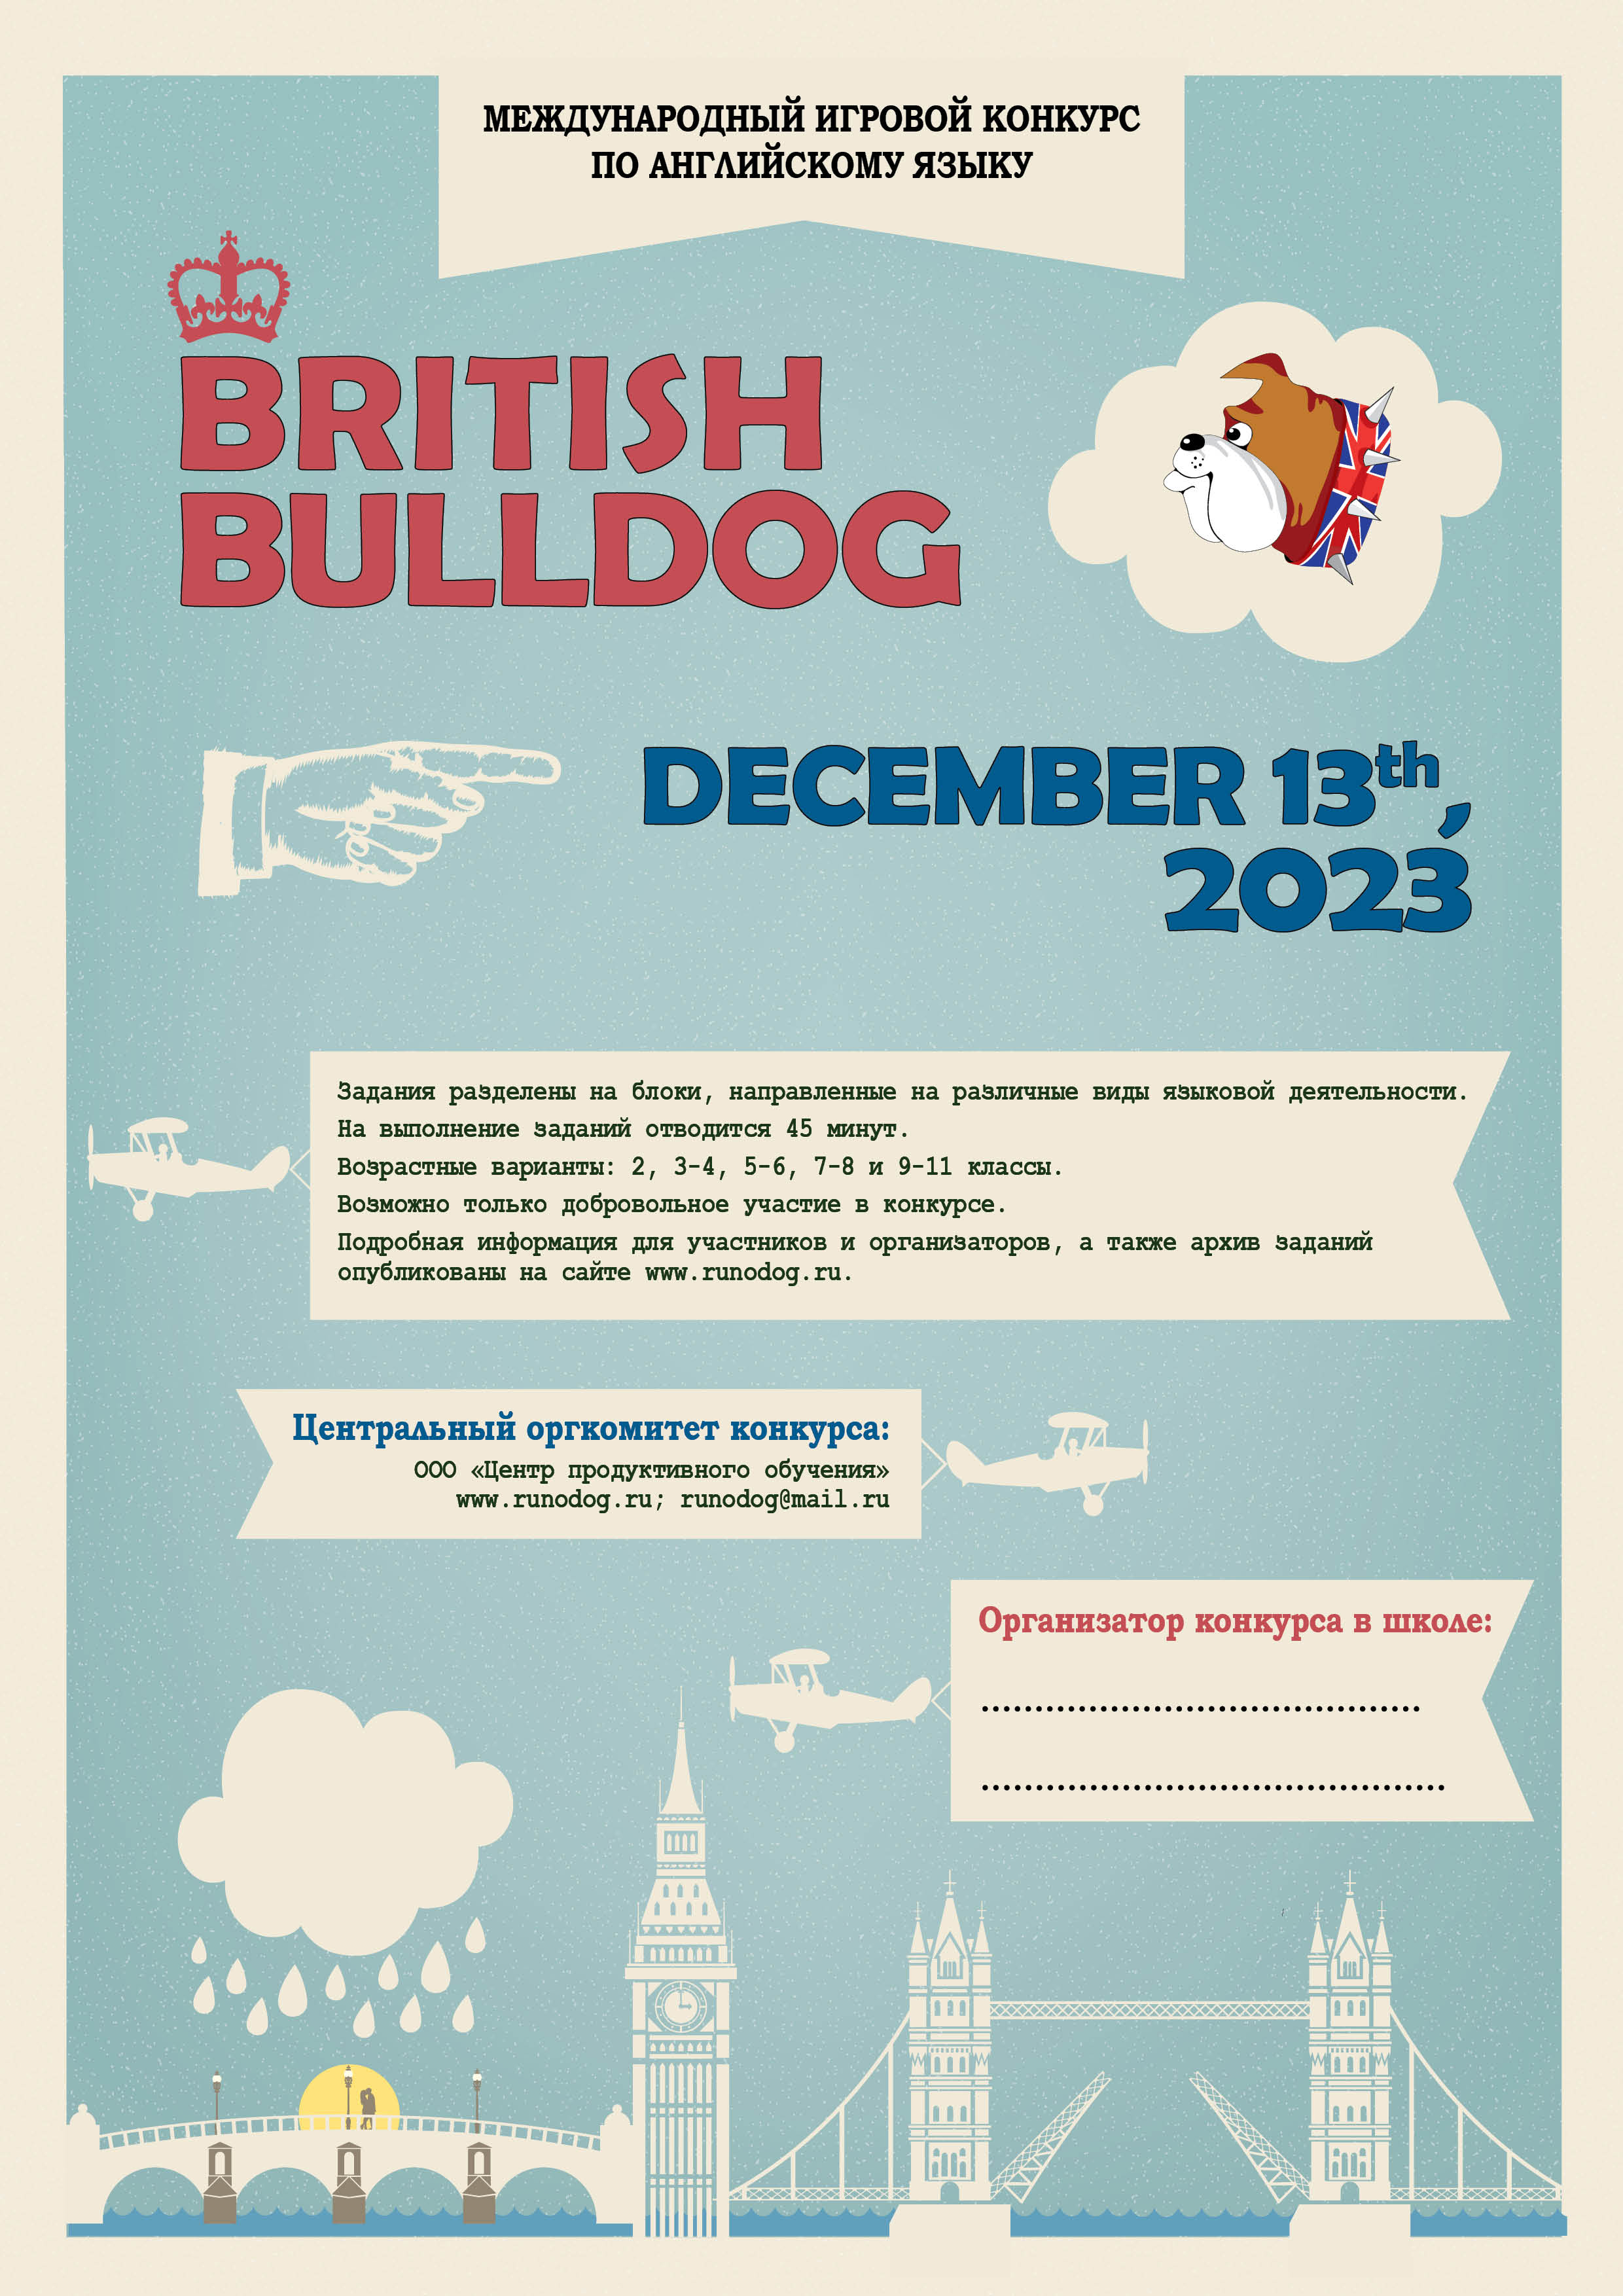 Конкурс по английскому языку - British Bulldog.